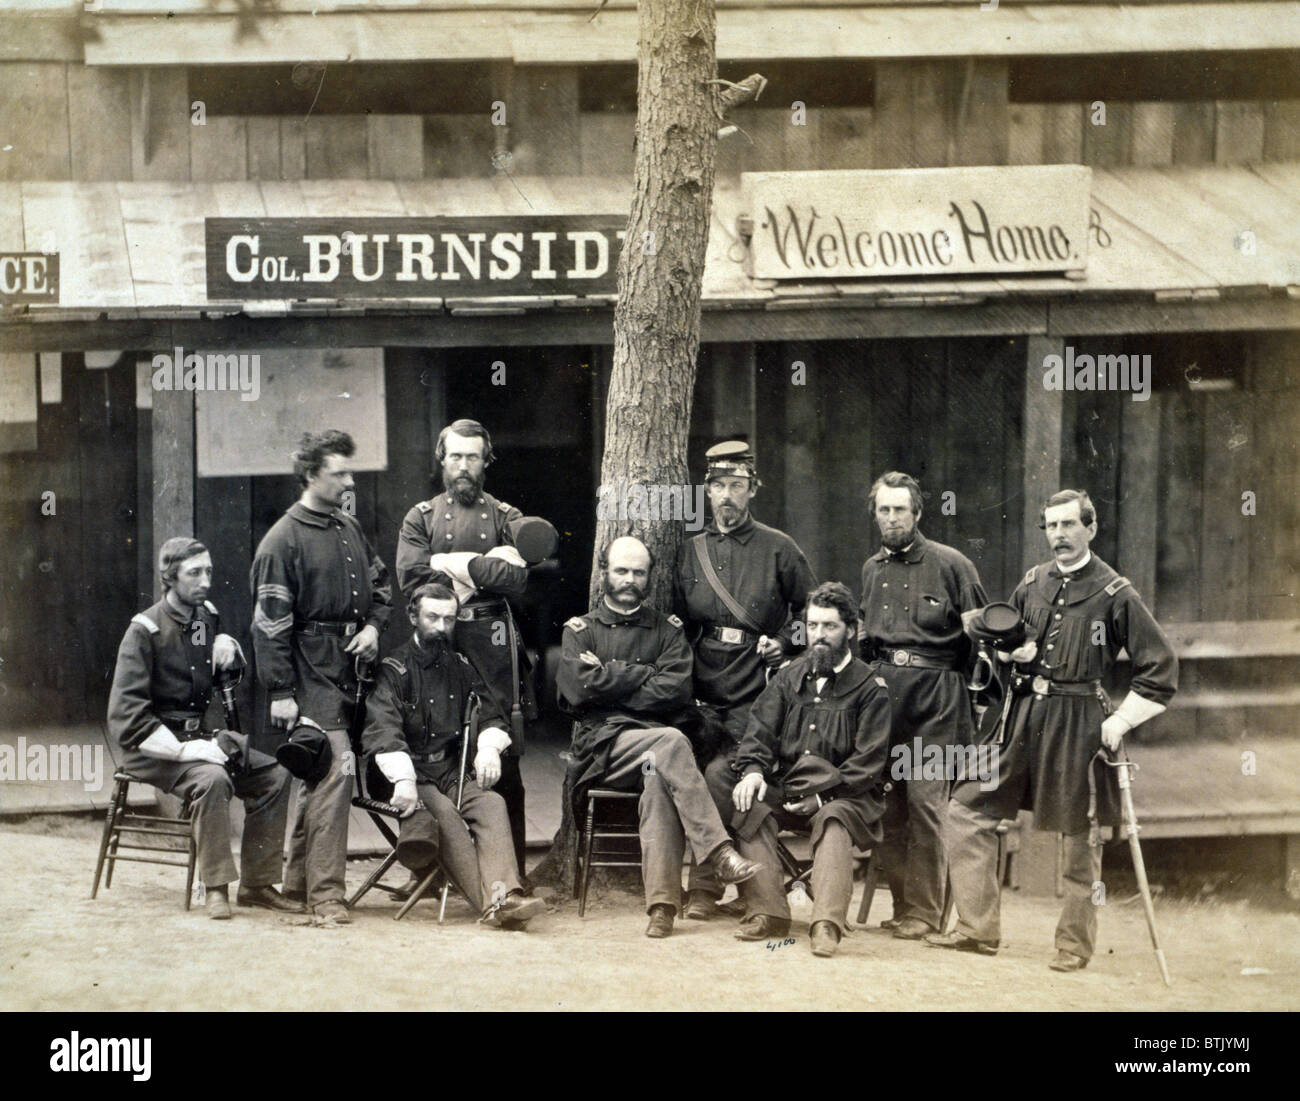 La guerra civile. Ambrogio Everett Burnside con otto ufficiali del lst Rhode Island volontari nella parte anteriore dell'edificio, con segno a leggere 'Col. Burnside benvenuti home ". Camp Sprague, Distretto di Columbia, 1861 Foto Stock